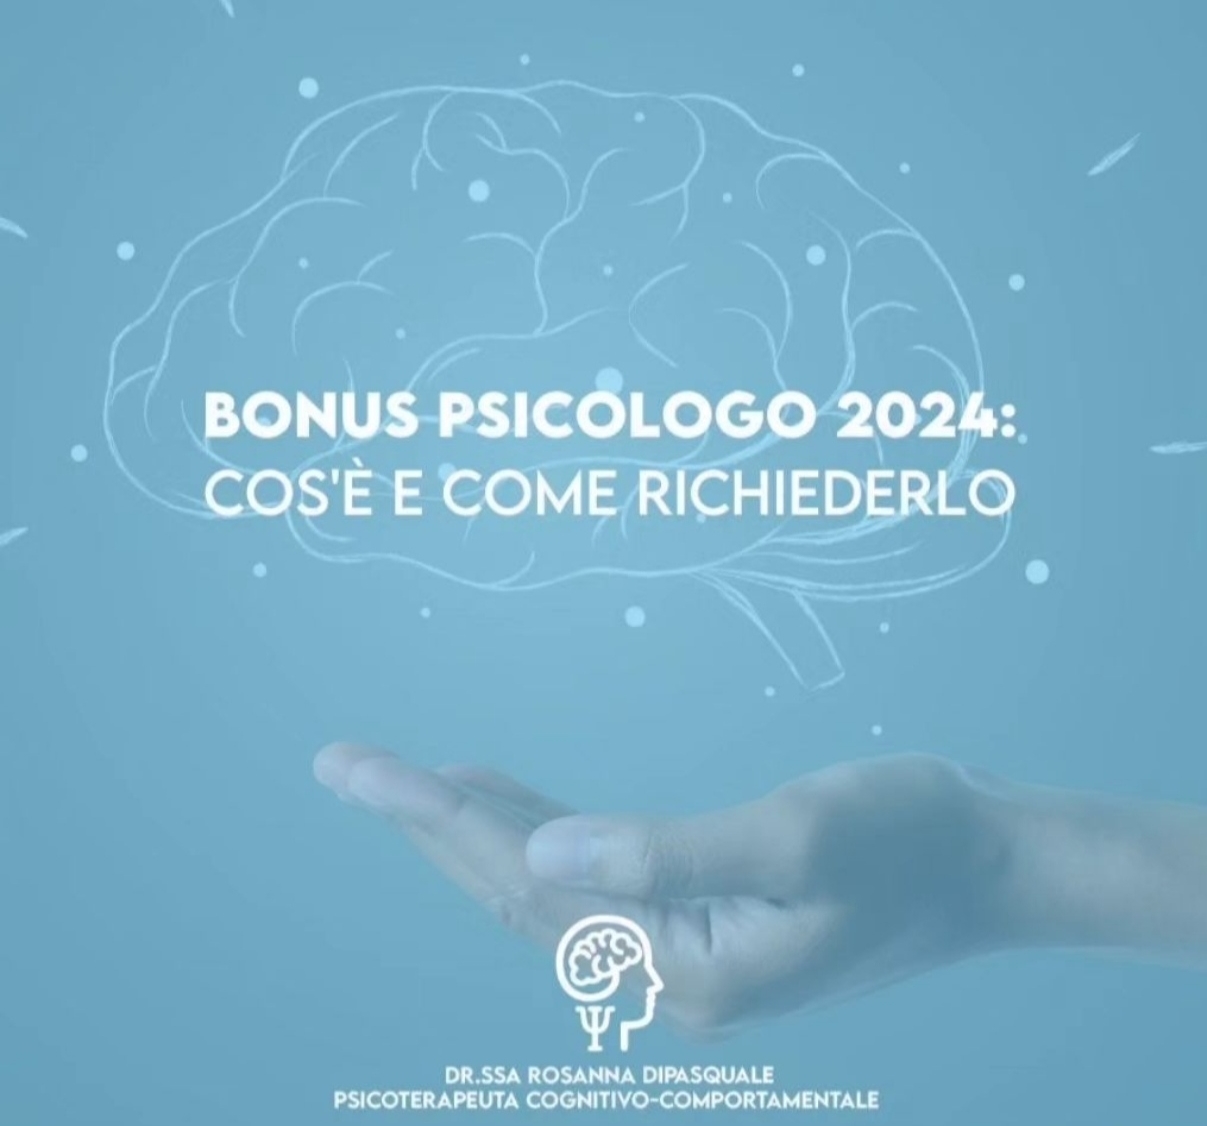 Come richiedere il bonus psicologico 2024? 